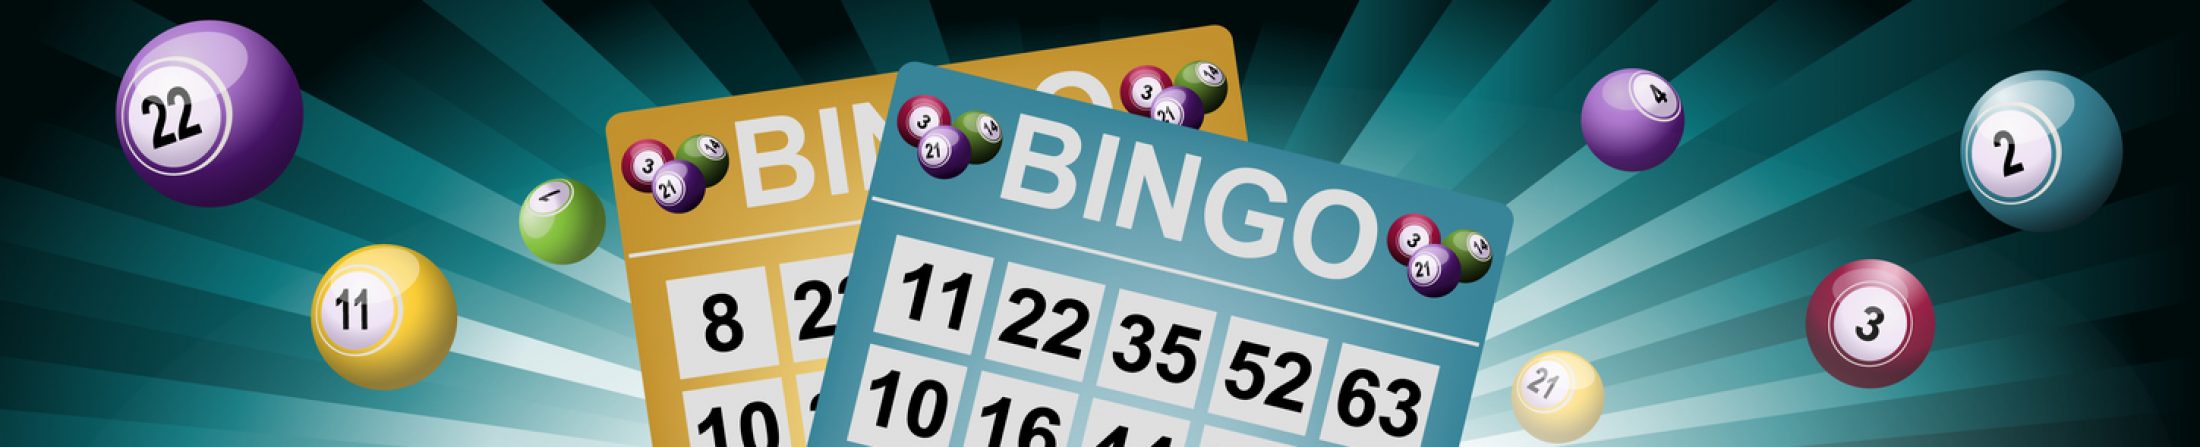 history-bingo-online